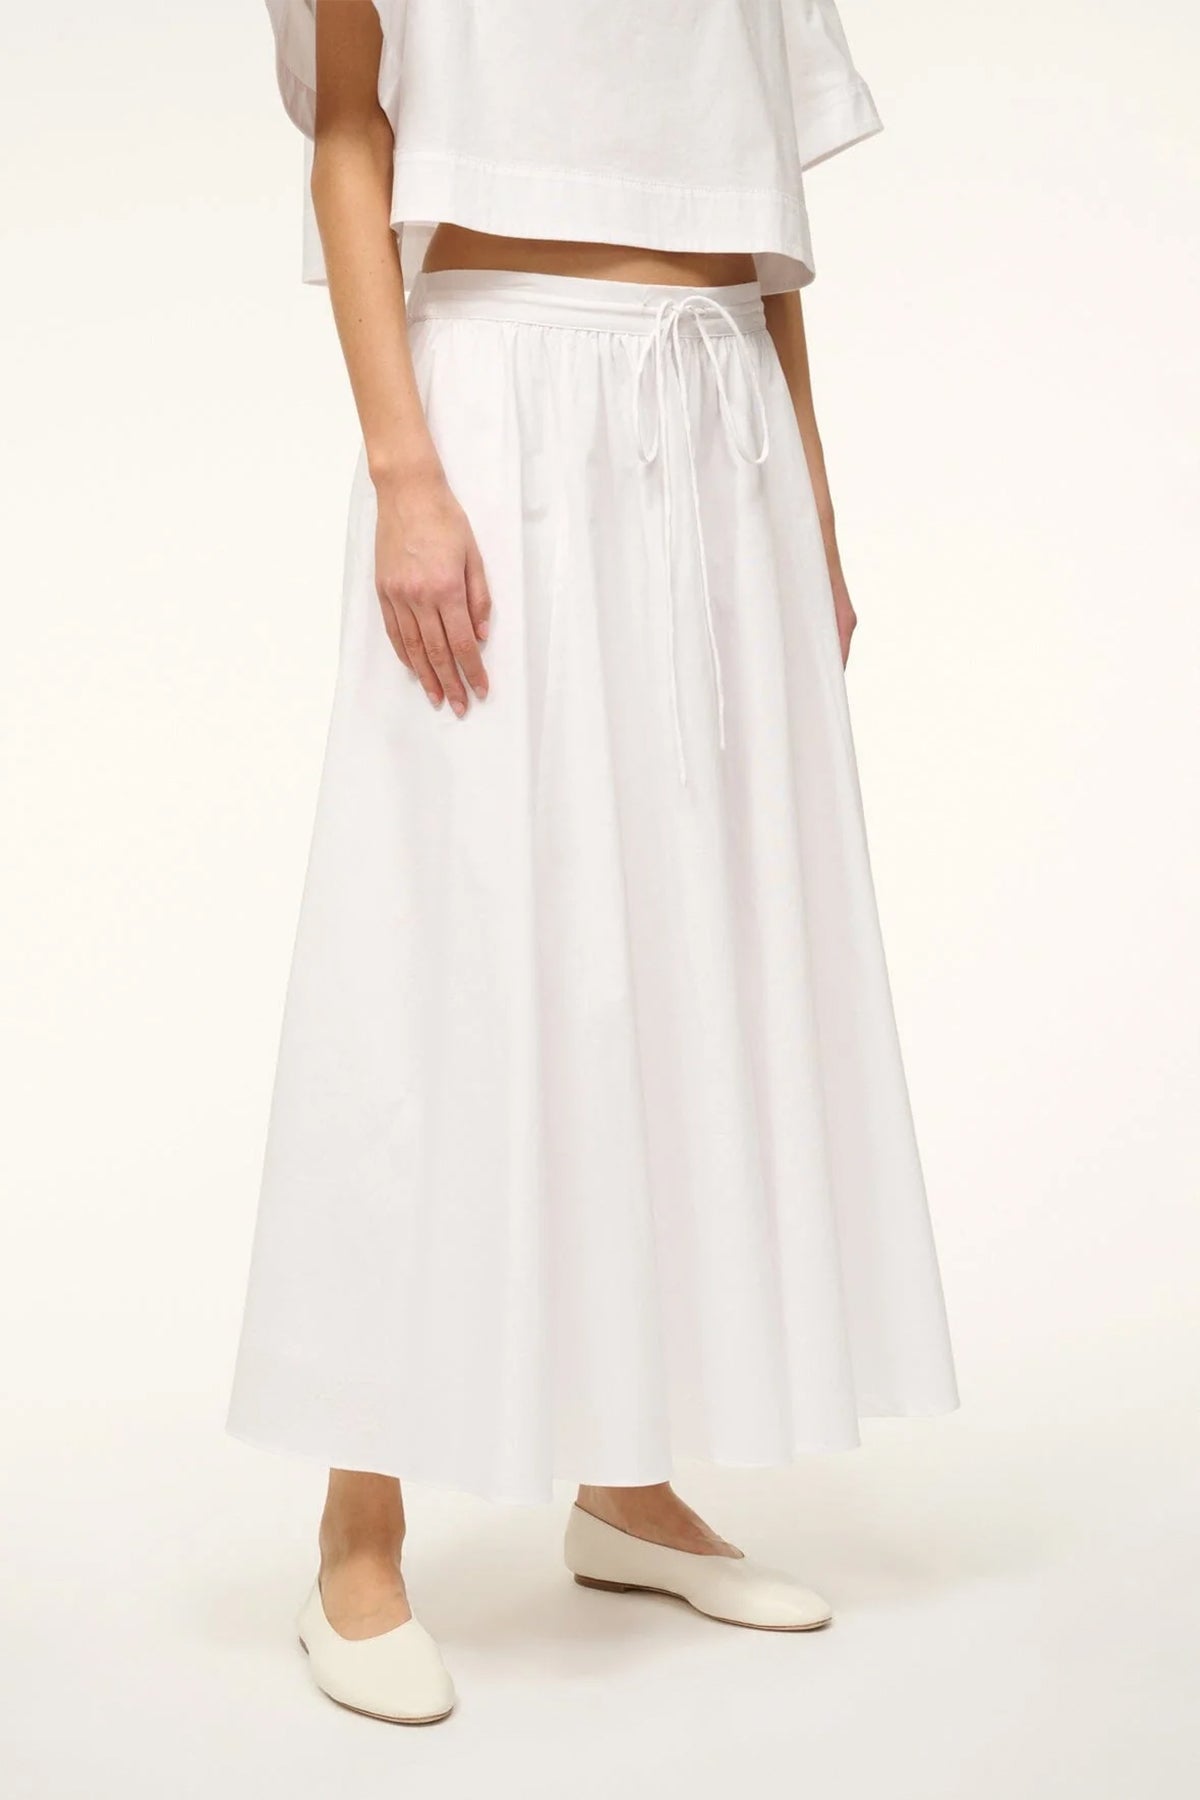 Eden Skirt in White - shop-olivia.com